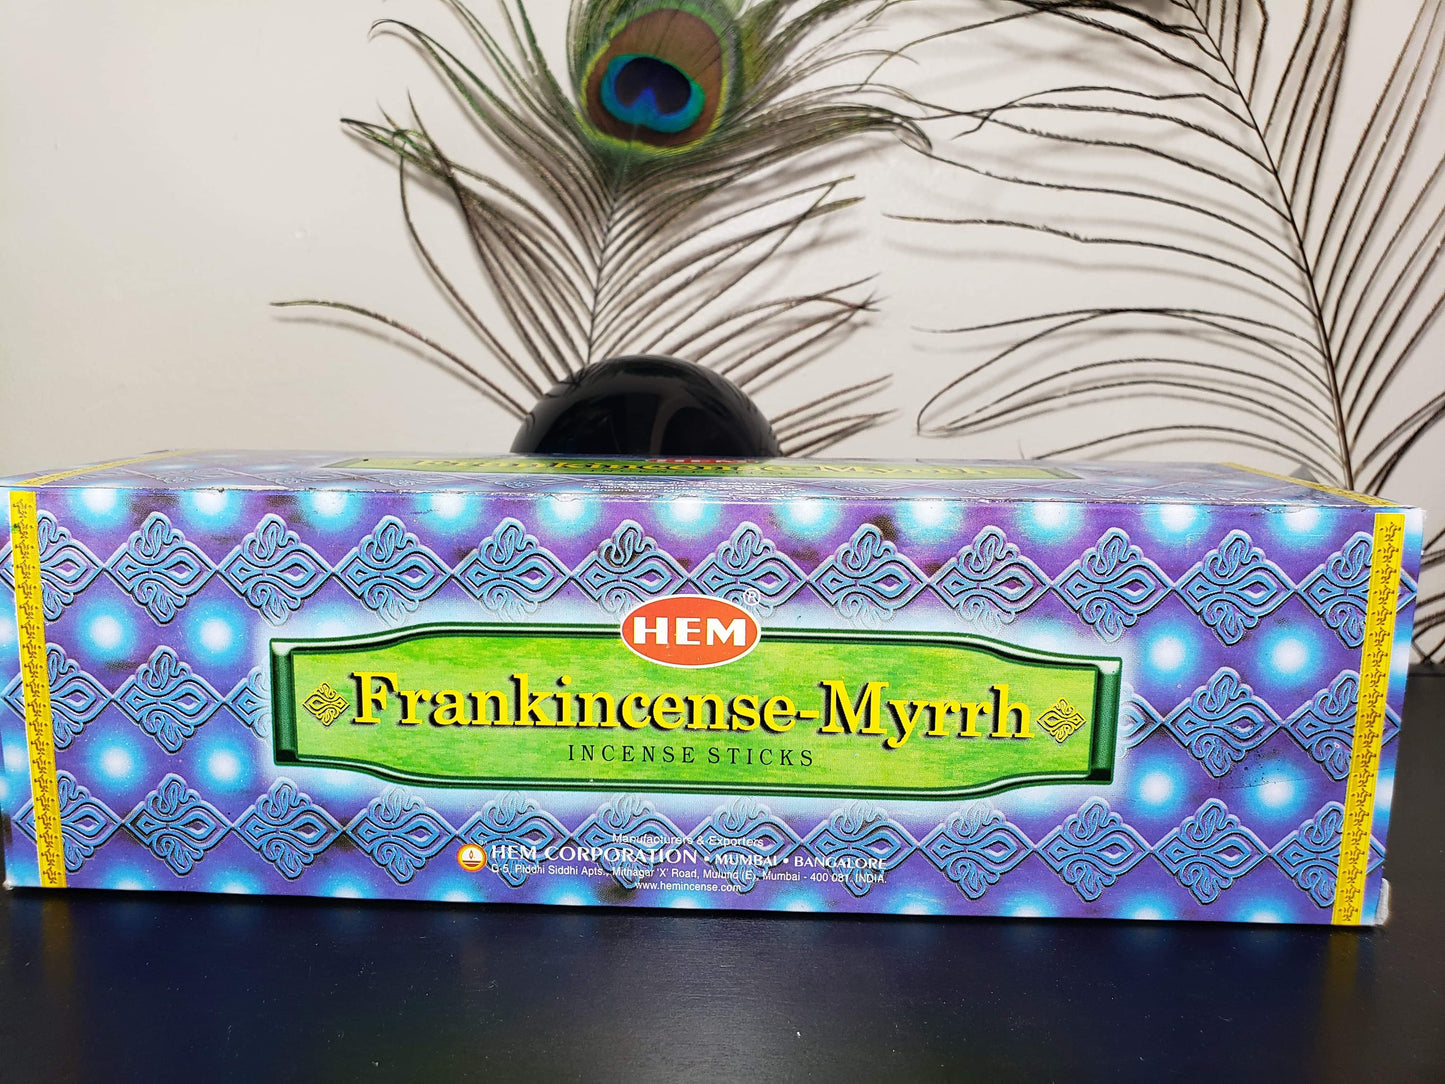 HEM Incense - Frankincense-Myrrh